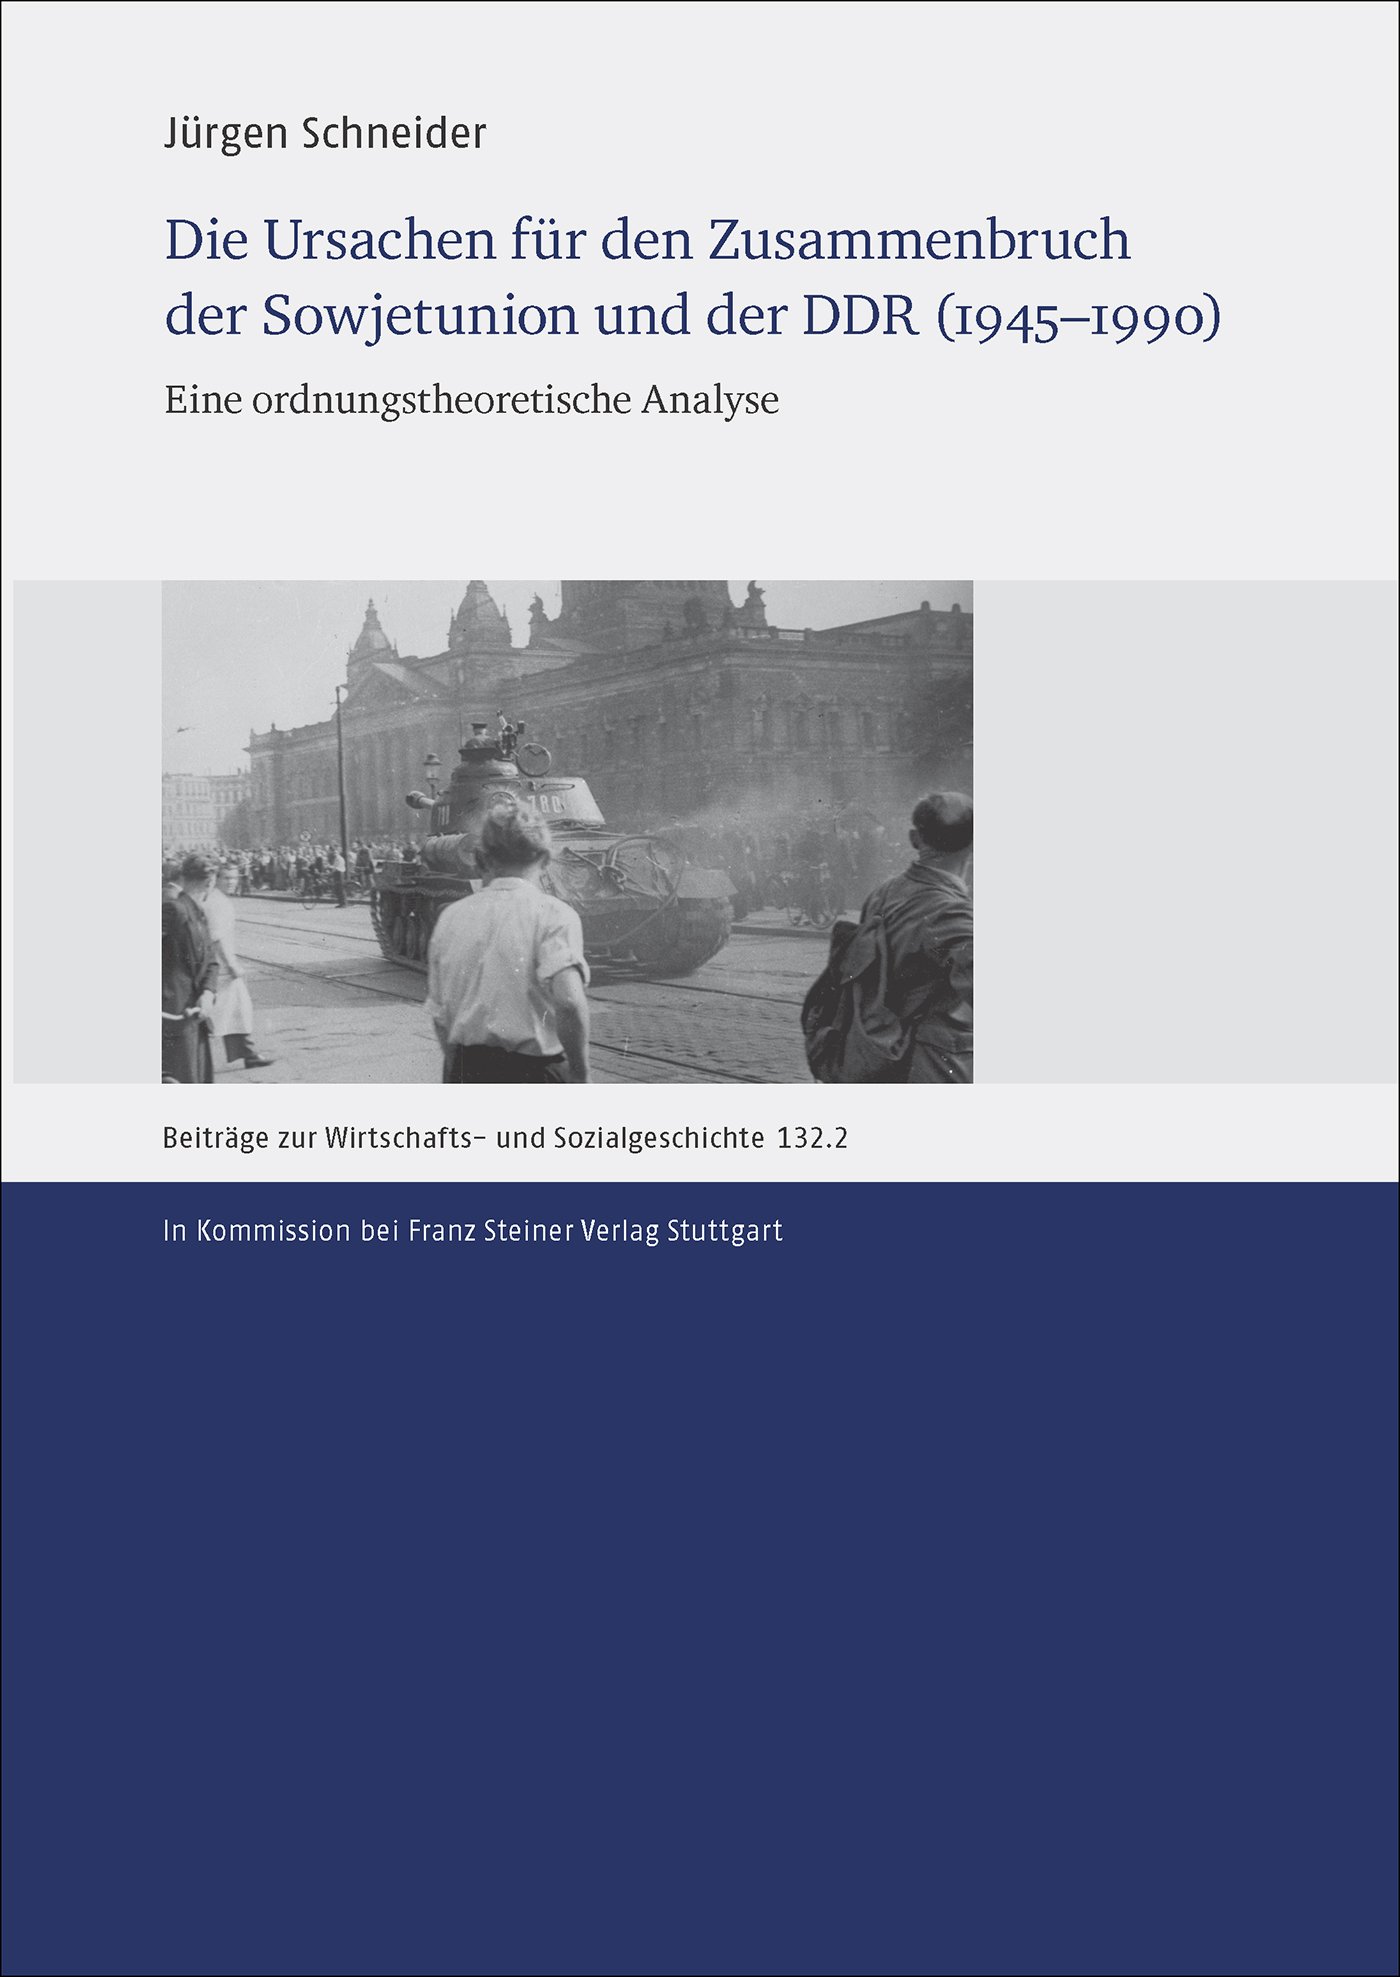 Die Ursachen für den Zusammenbruch der Sowjetunion und der DDR (1945–1990)